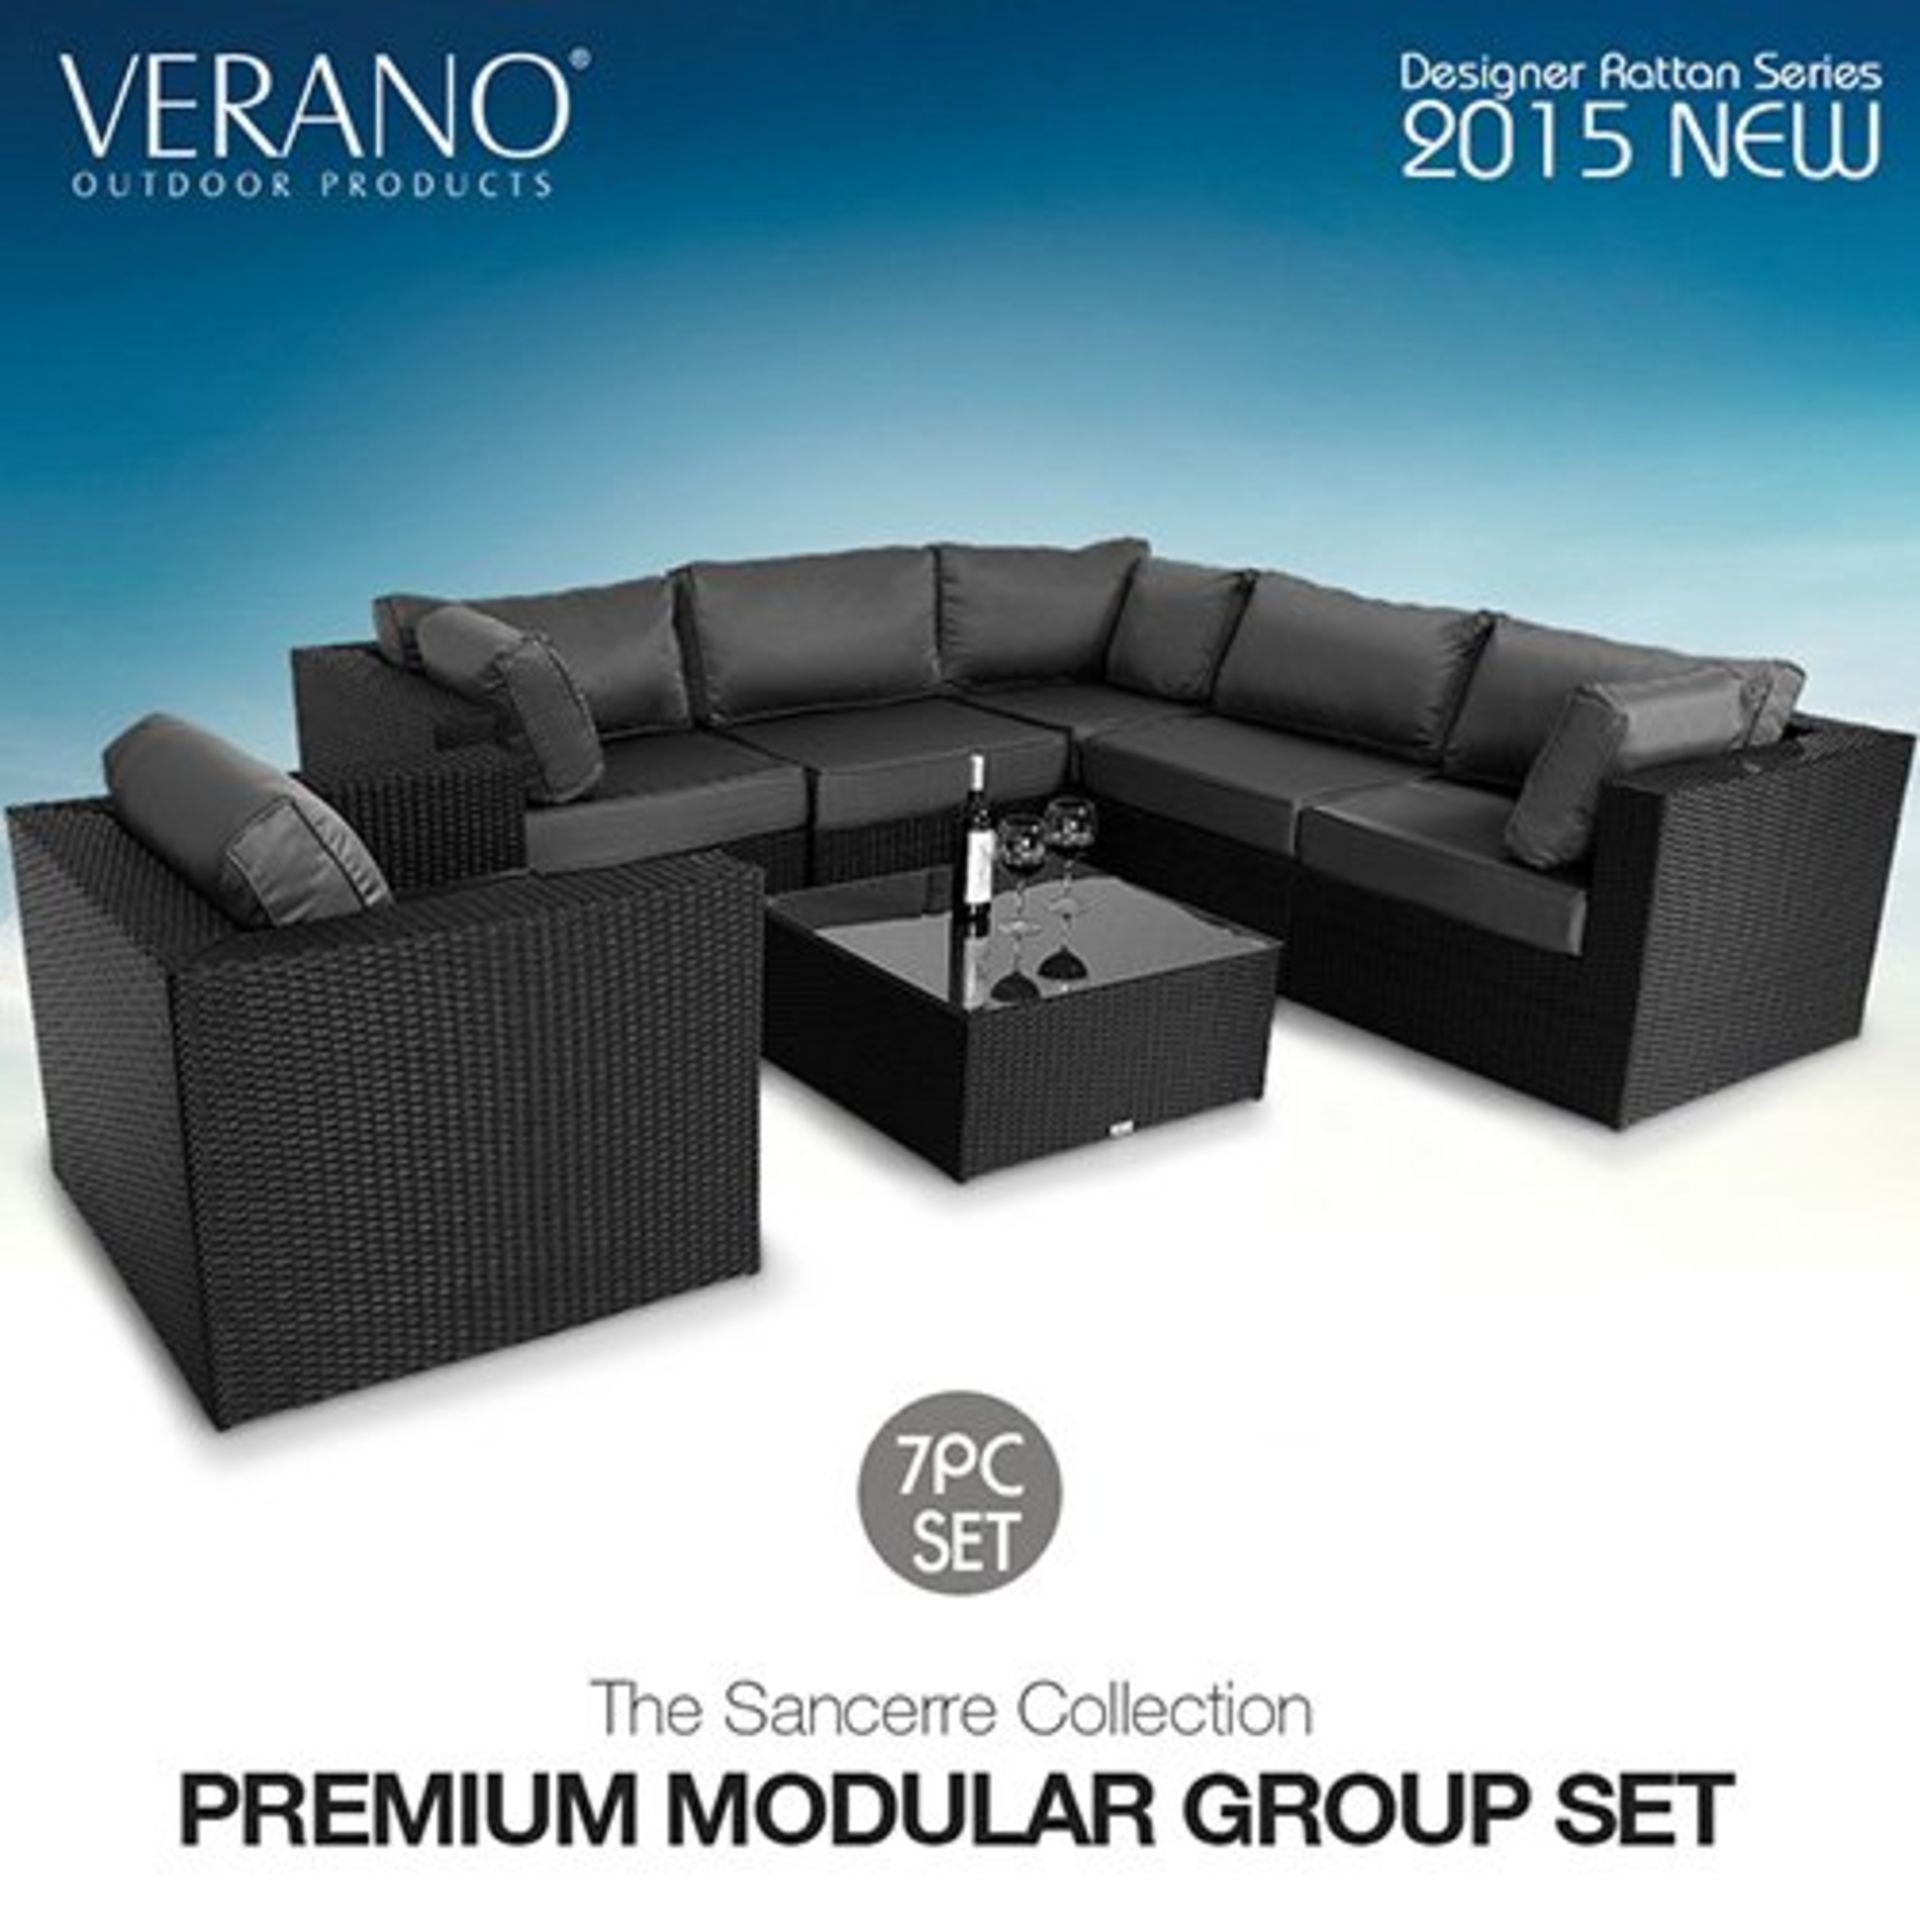 Verano® Sancerre Luxury Rattan Garden Furniture Outdoor Indoor Conservatory Patio Weave Wicker - Image 4 of 4